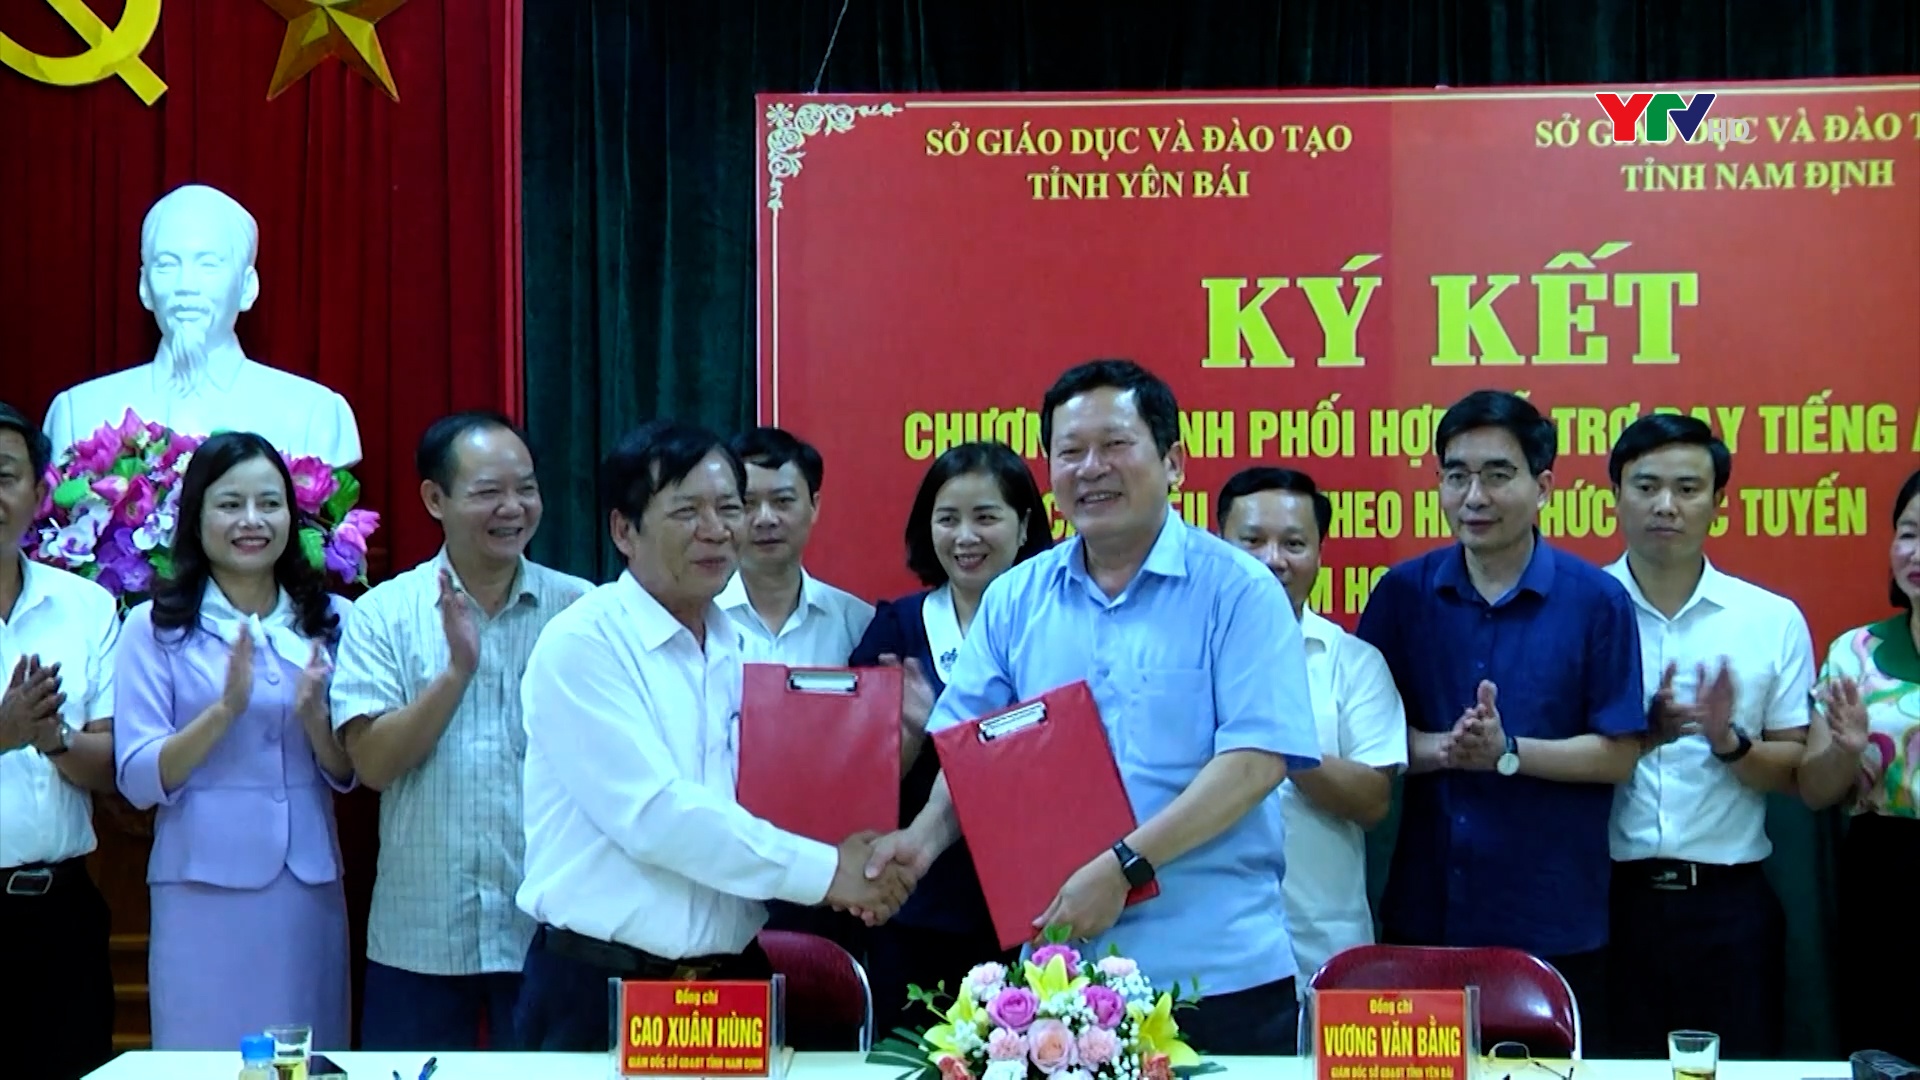 Yên Bái và Nam Định ký kết chương trình phối hợp hỗ trợ dạy học Tiếng Anh cấp Tiểu học theo hình thức trực tuyến